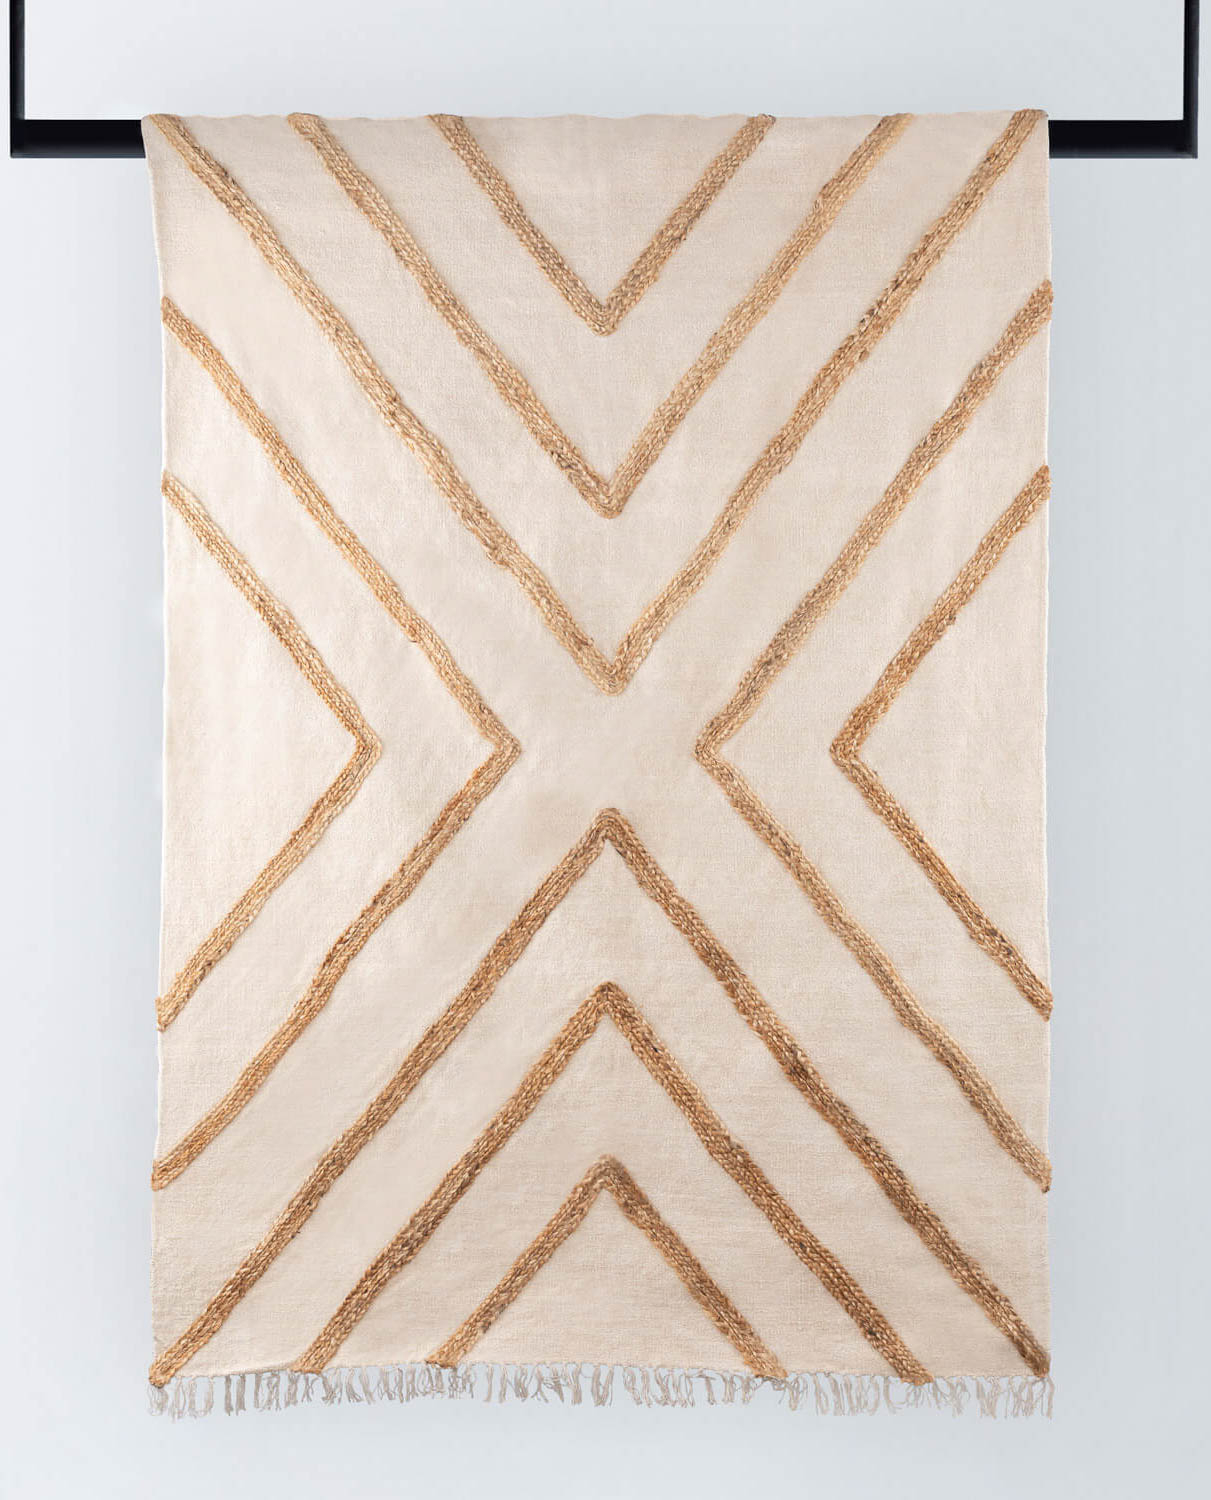 Tappeto Artigianale in Tessuto e Juta (236x160 cm) Nurai , immagine della galleria 1